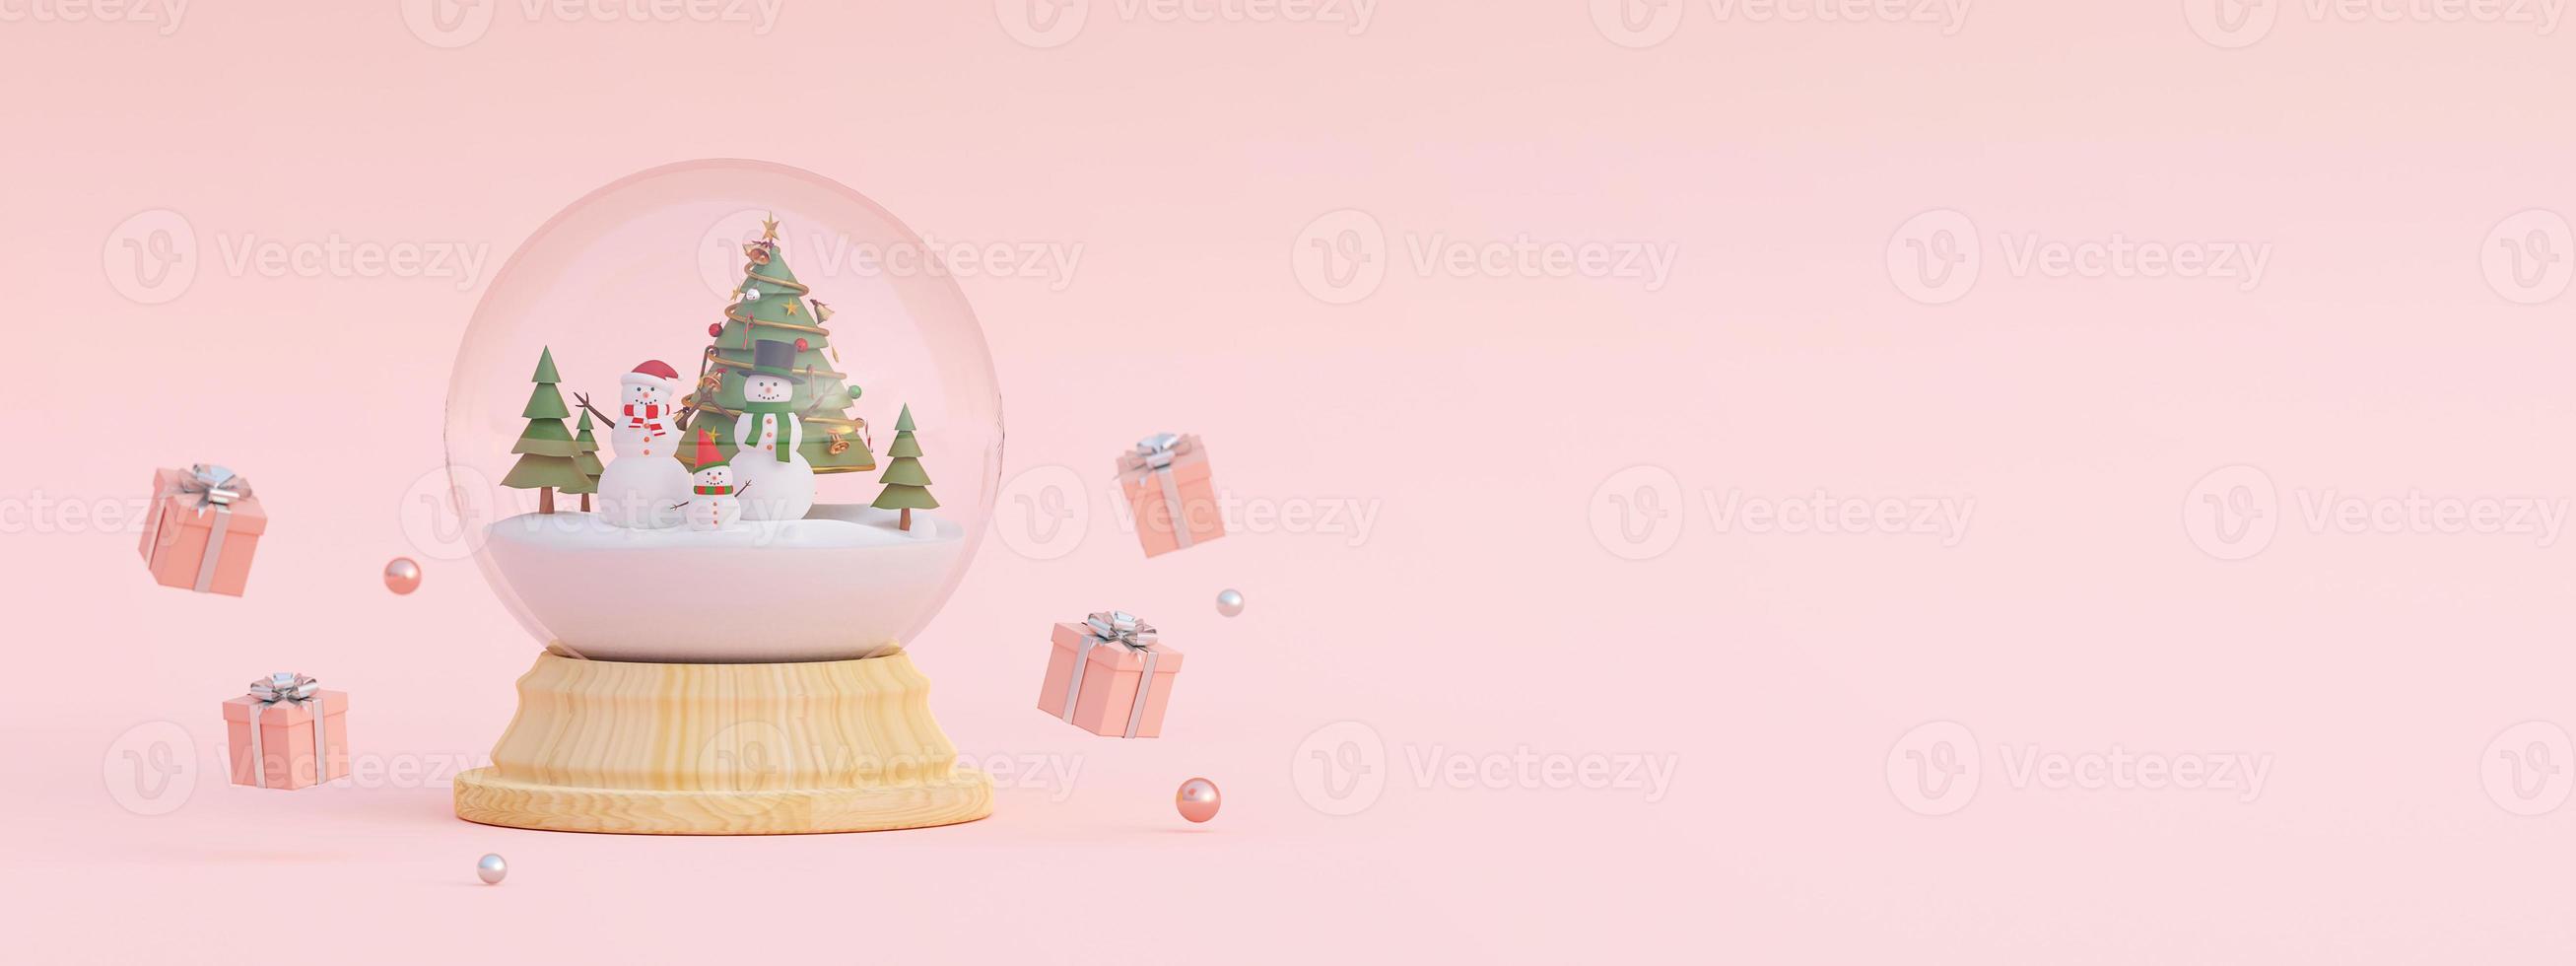 Frohe Weihnachten und ein glückliches neues Jahr, Szene von Weihnachtsgeschenken und Schneemann mit Weihnachtsbaum in einer Schneekugel, 3D-Rendering foto